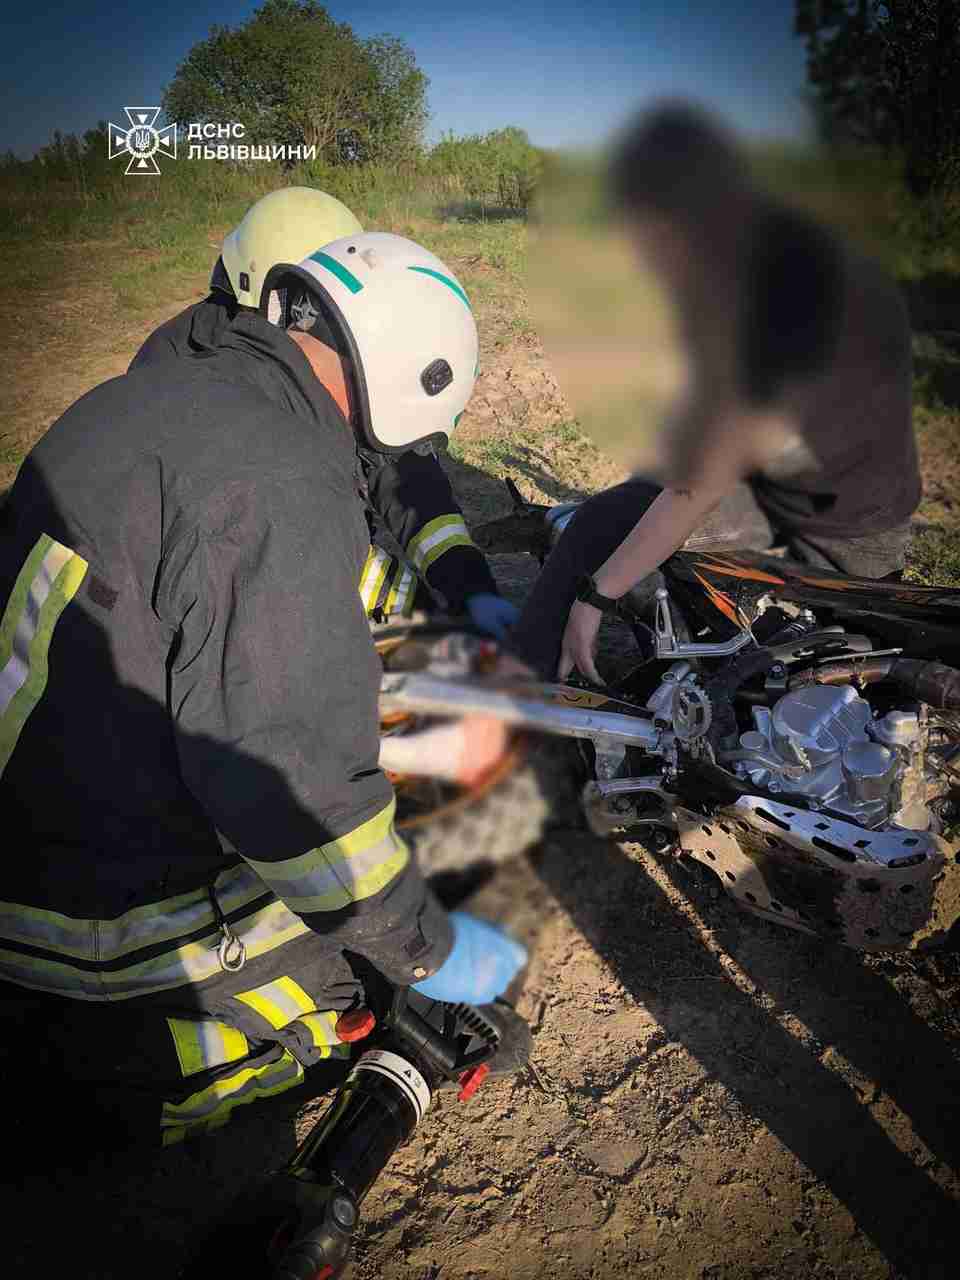 На Львівщині рятувальники визволили затиснуту ногу дівчини, яка впала з мотоцикла